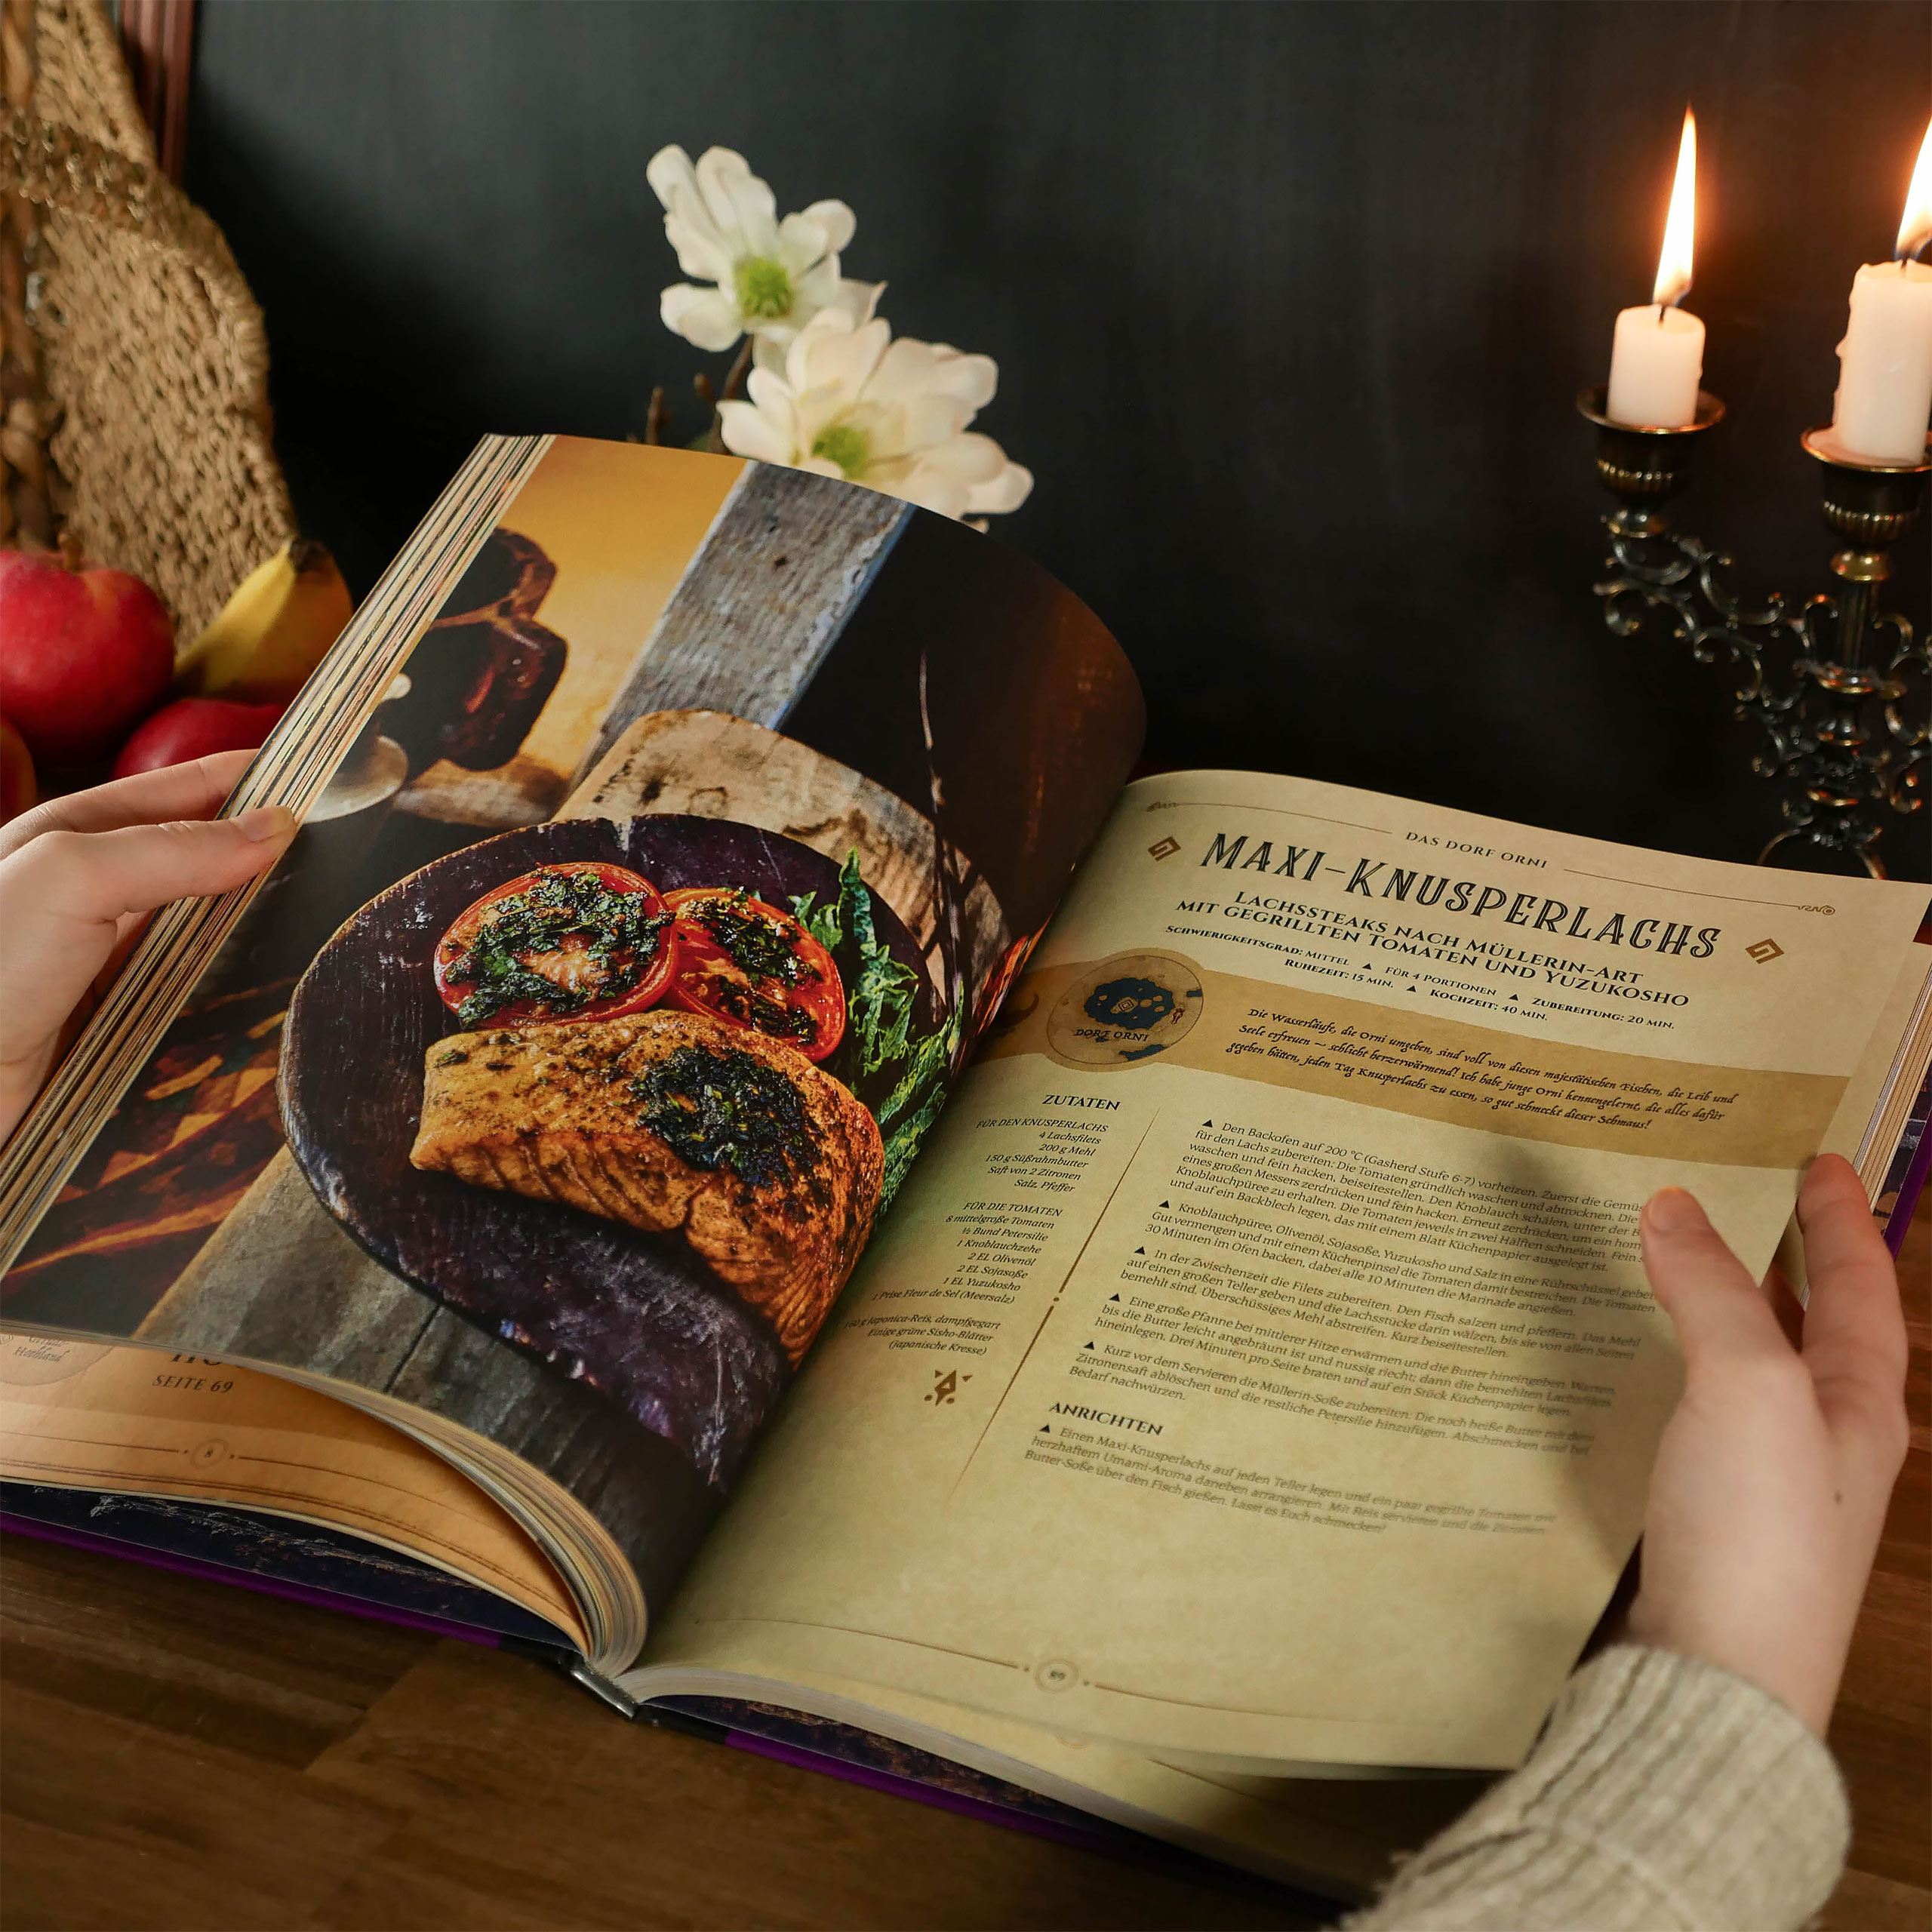 Die legendäre Küche von Zelda - Kochbuch